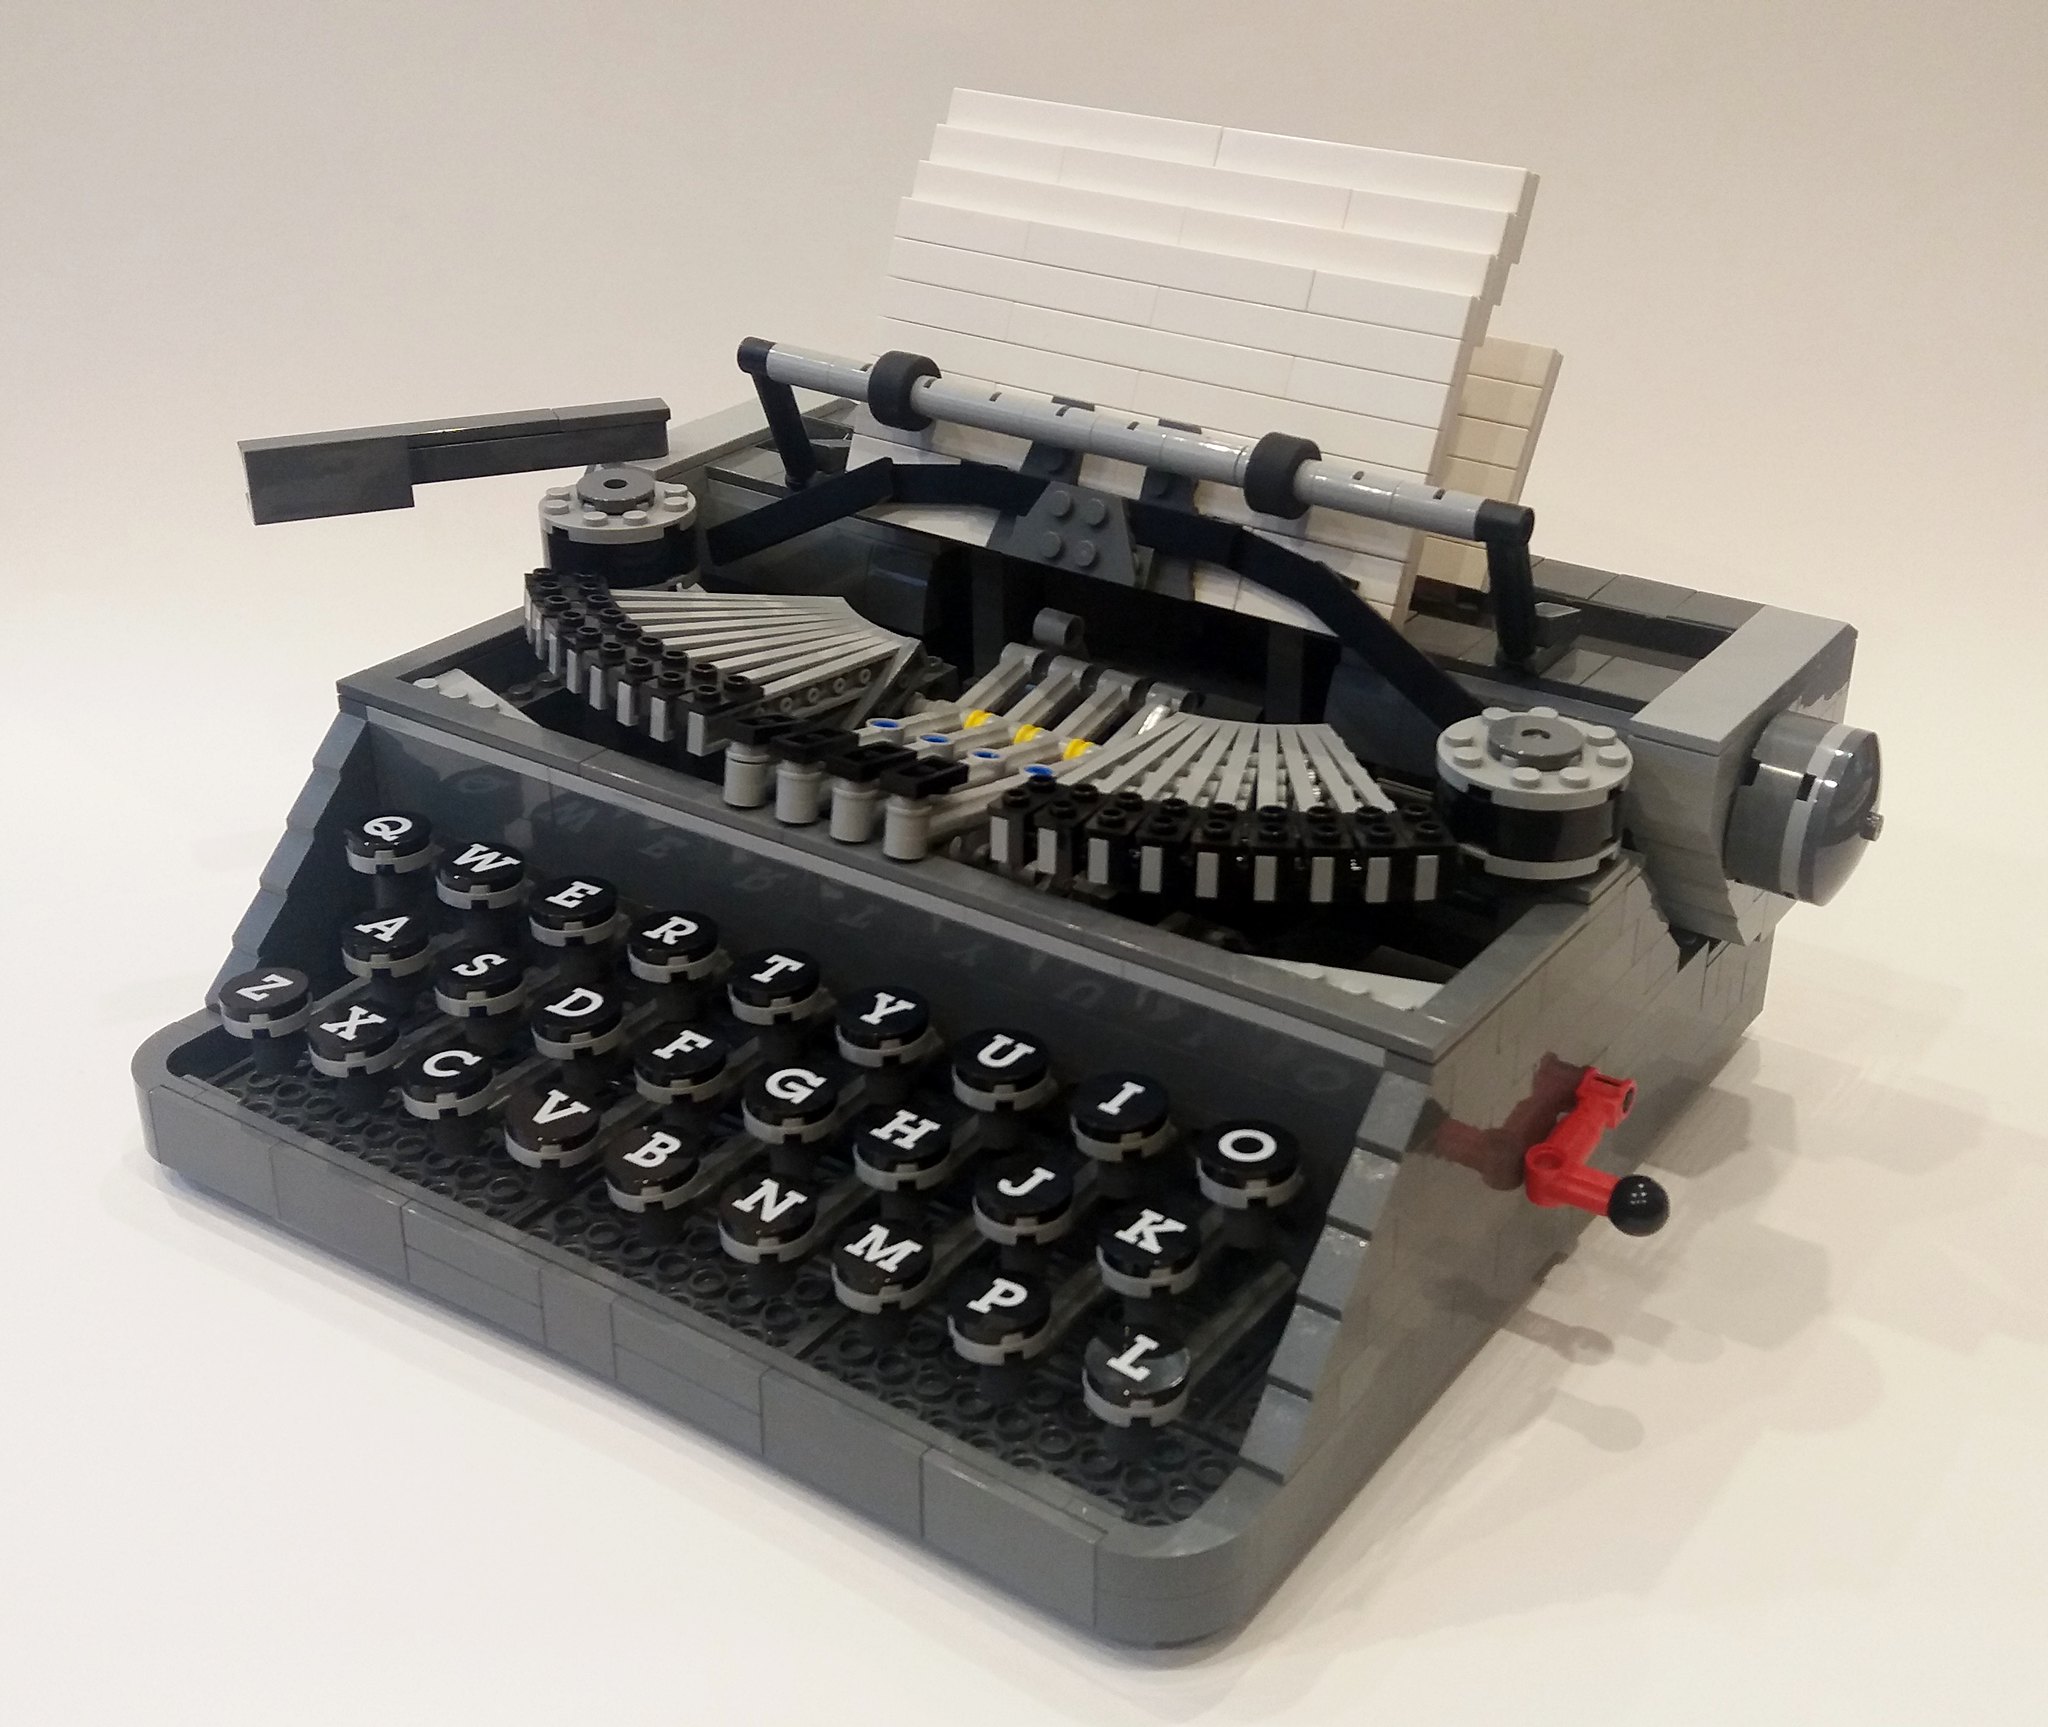 LEGO Macchina da Scrivere: recensione del set Lego Ideas 21327 Typewriter